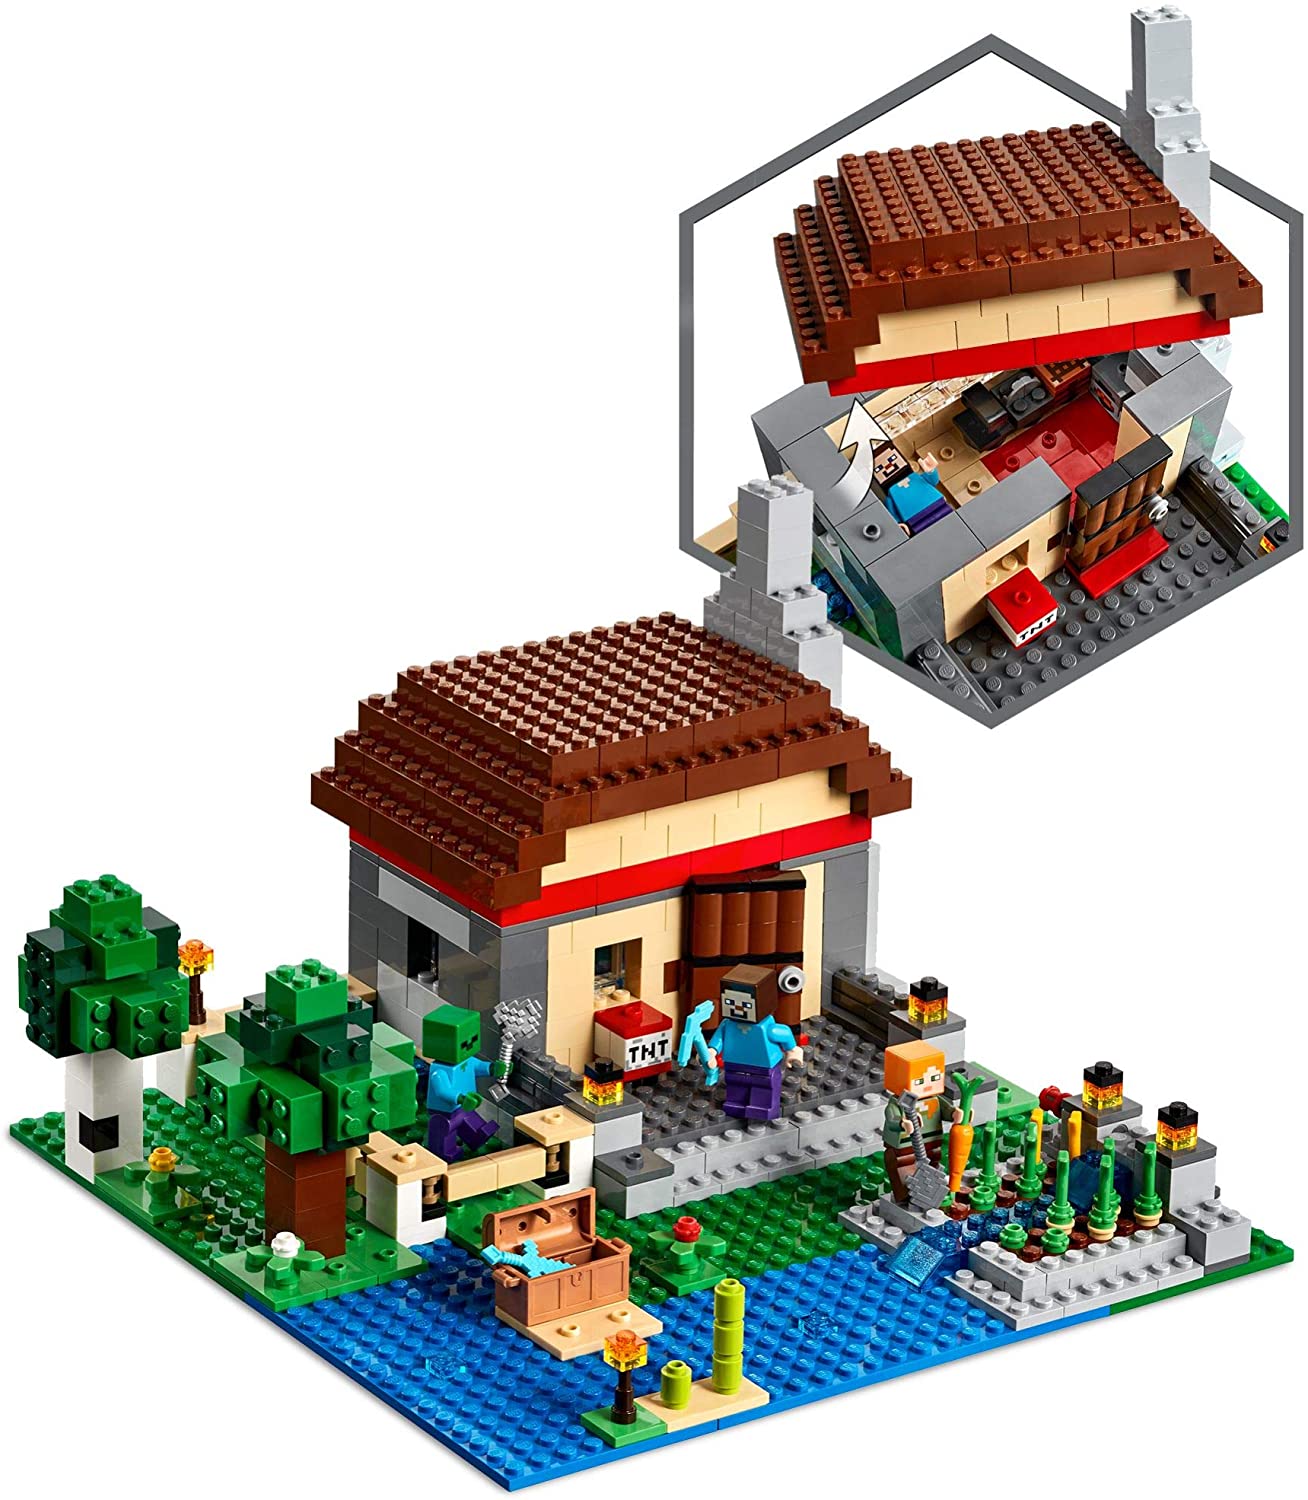 Lego Minecraft Summer Sets Revealed On Amazon The Brick Fan